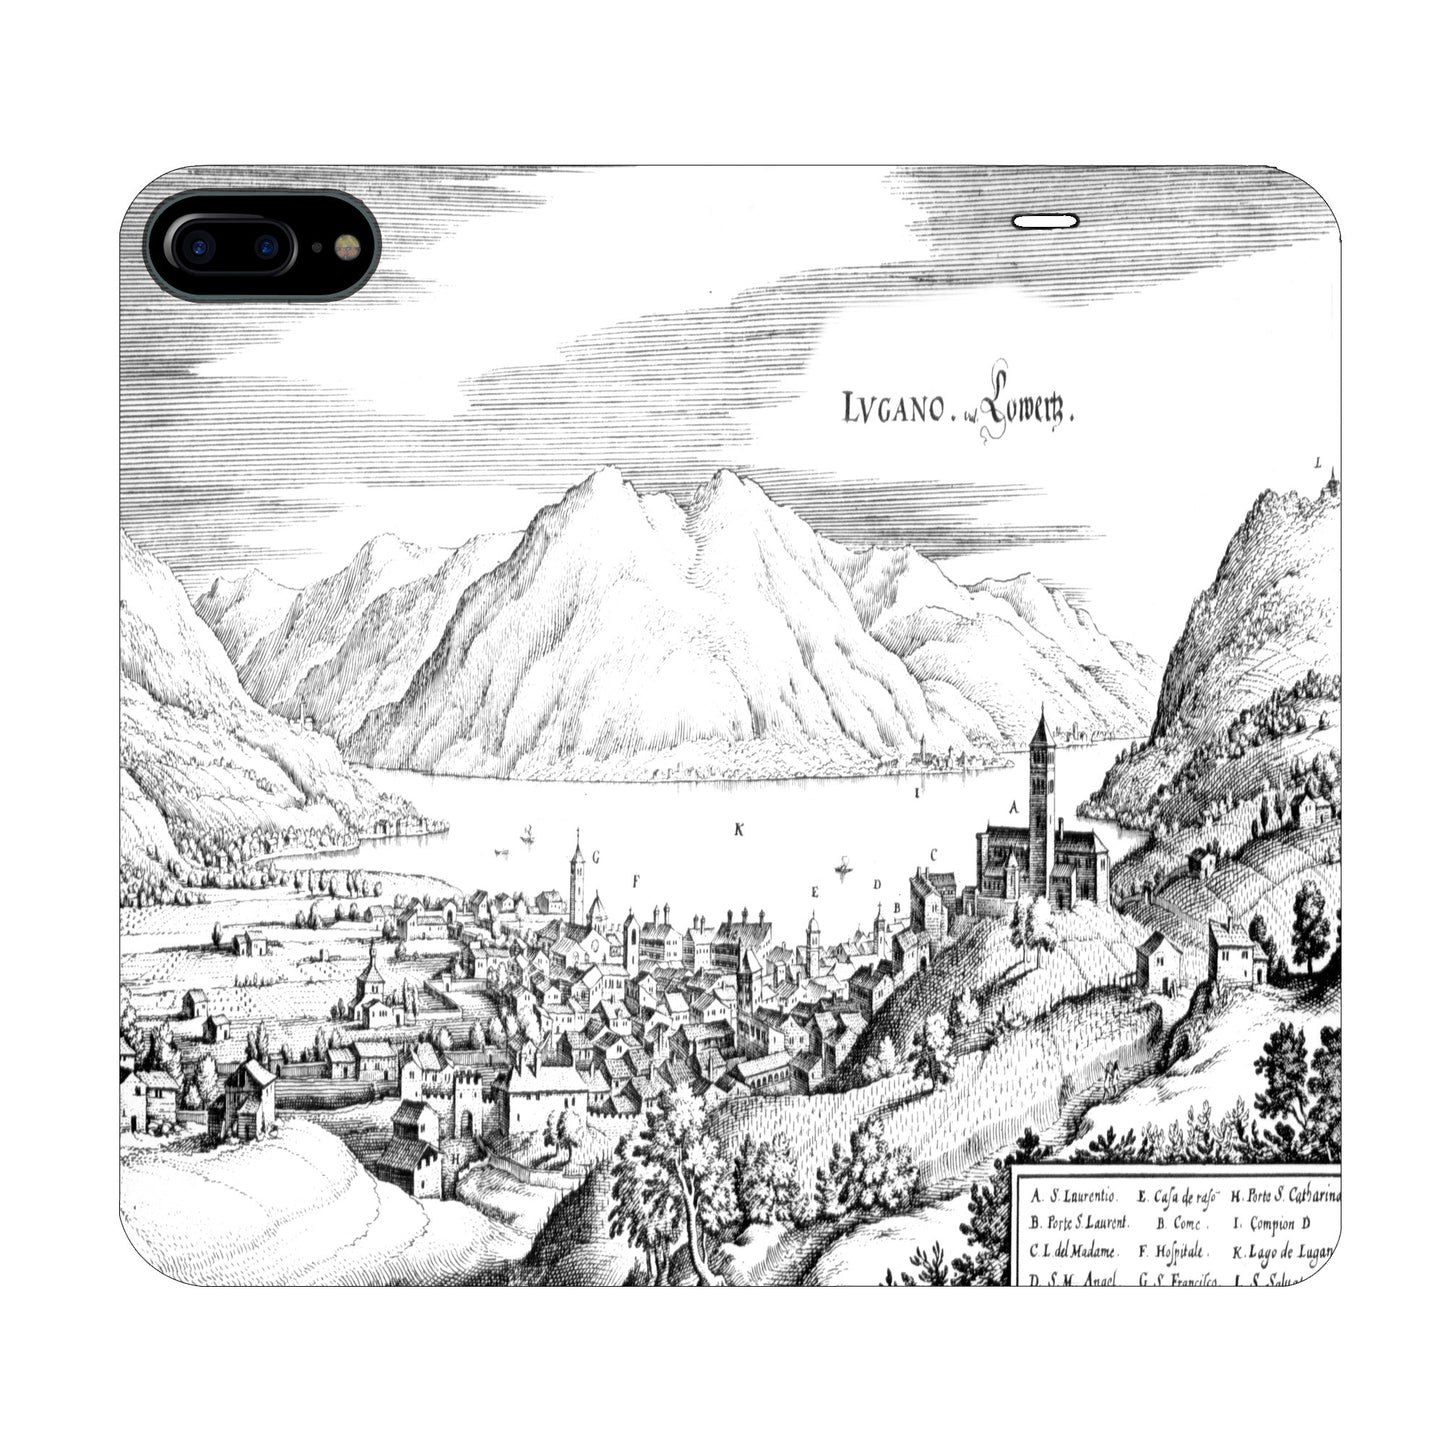 Lugano Merian Panorama Case for iPhone 6/6S/7/8 Plus